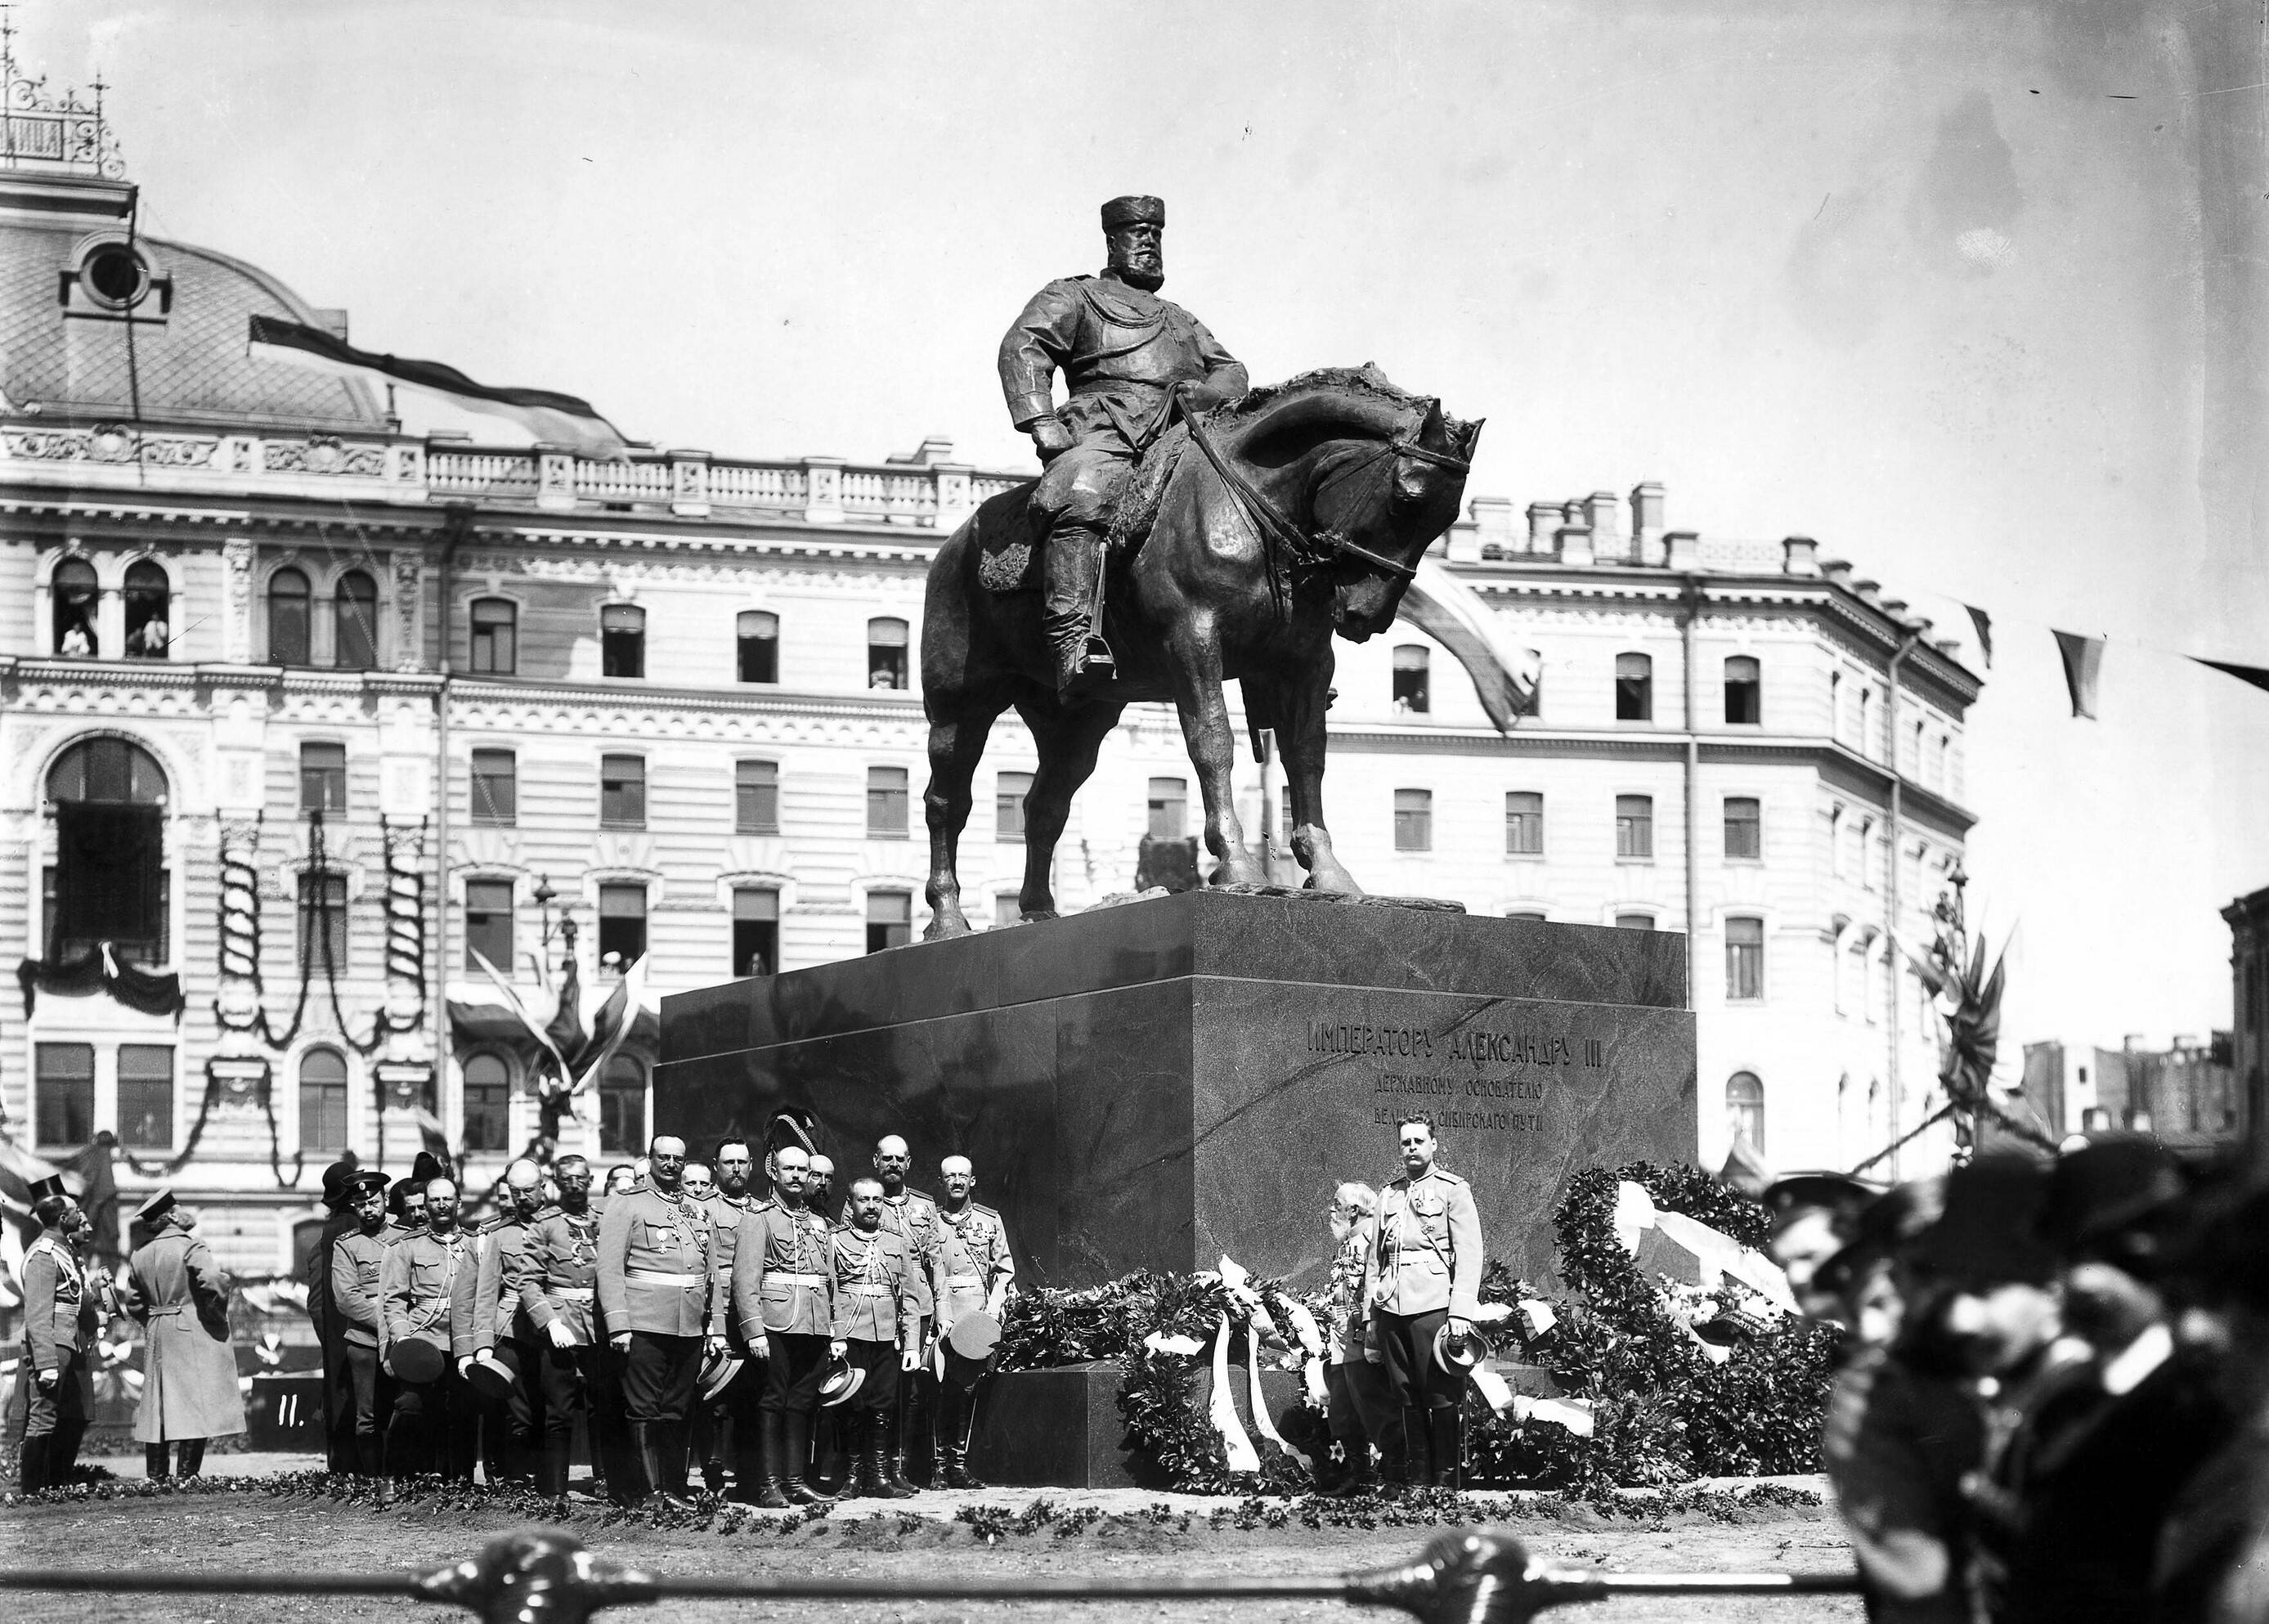 Открытие памятника Александру III 23 мая 1909 года на Знаменской (Восстания) площади в Санкт-Петербурге.